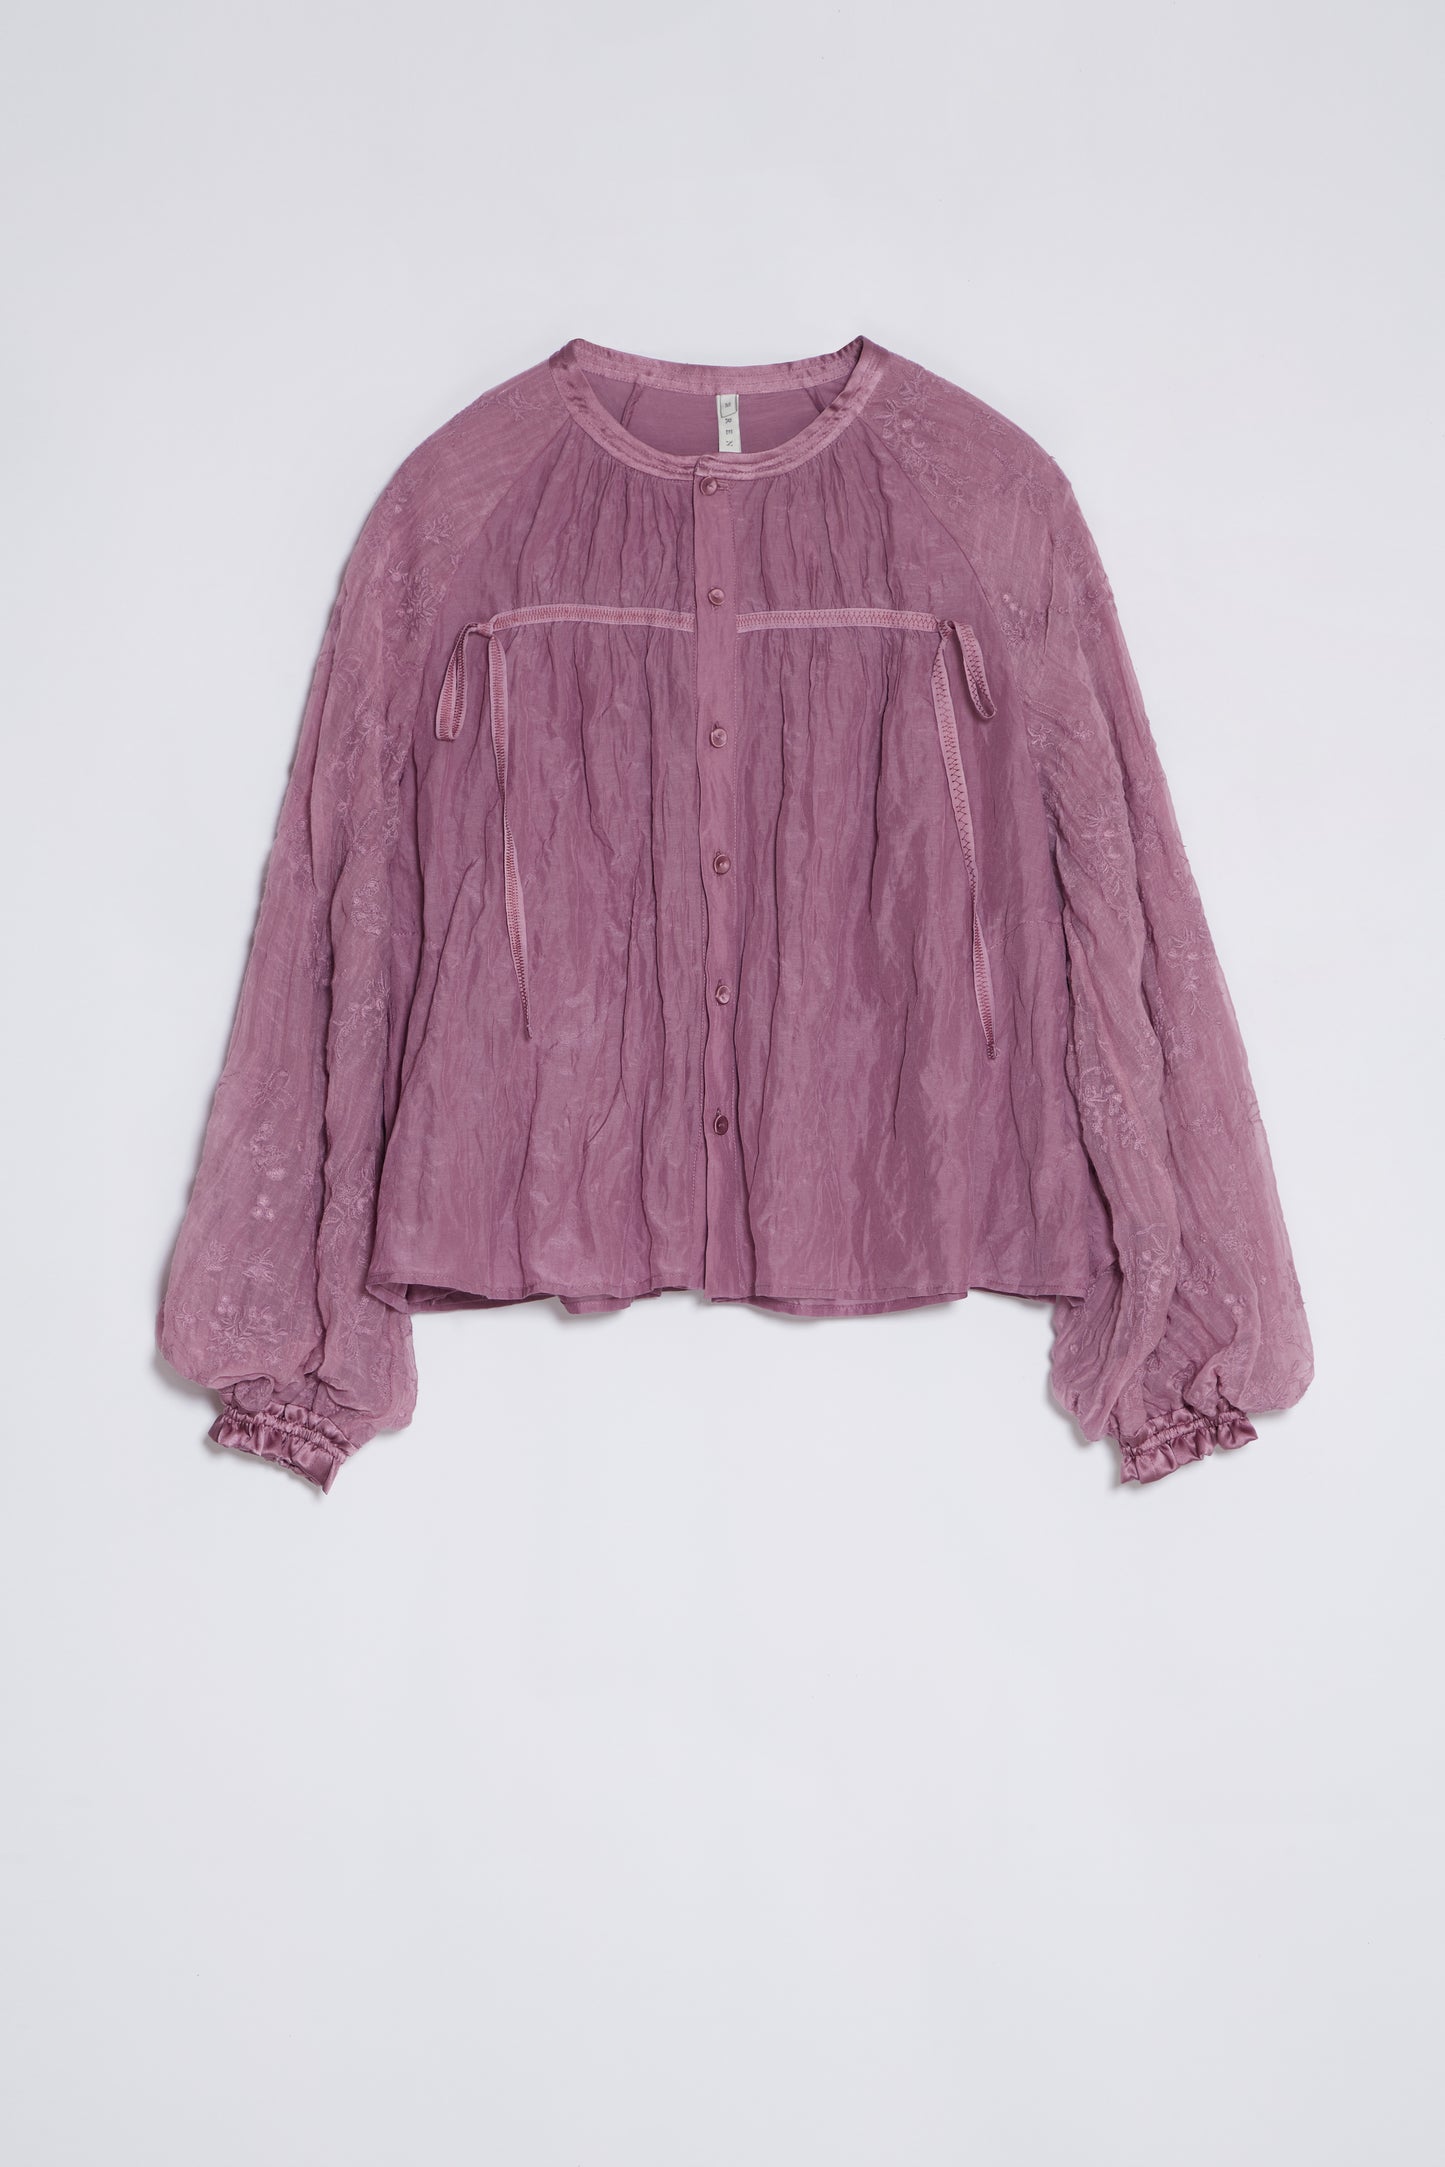 Hardin herbal dye blouse in purple